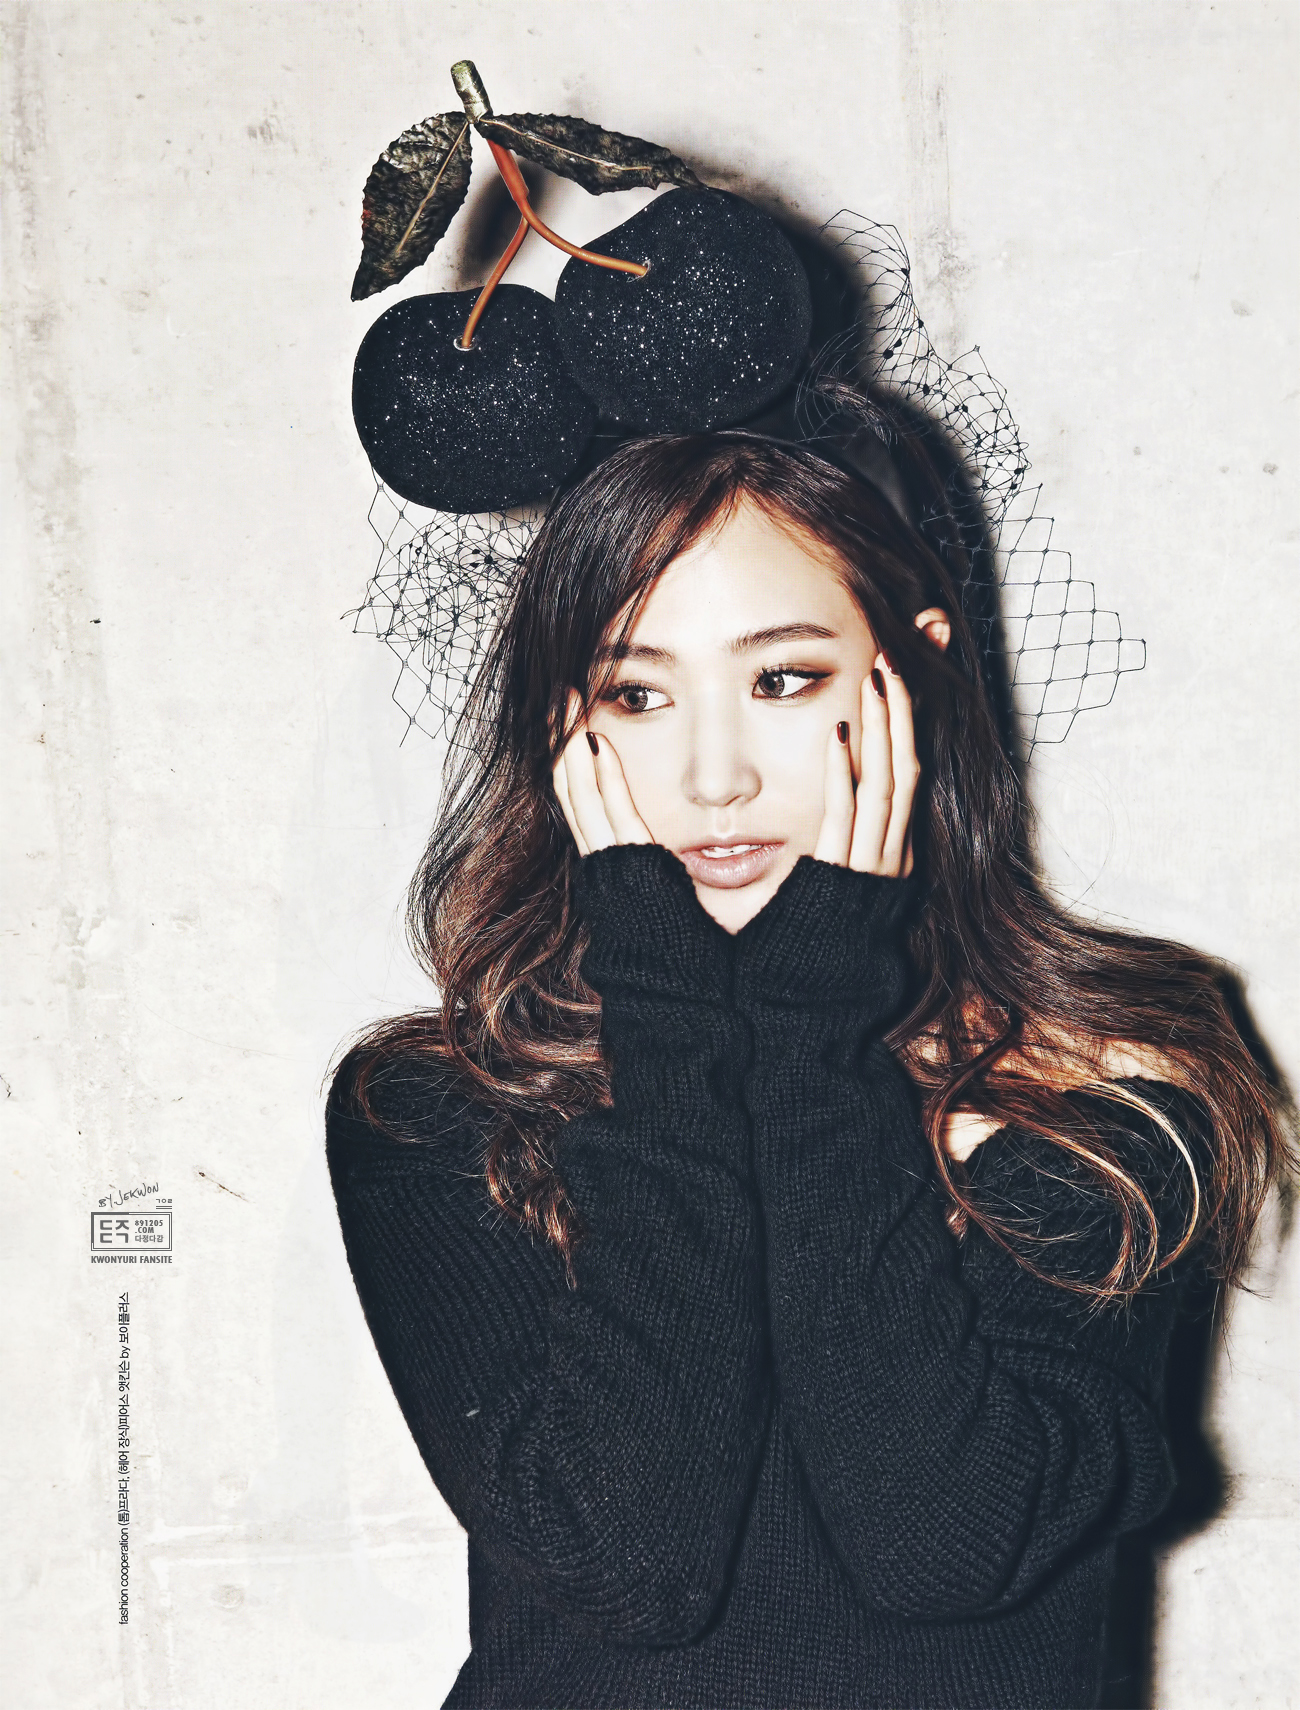 [PIC][17-10-2013]Yuri đầy quyến rũ trên ấn phẩm tháng 11 của tạp chí "Cosmopolitan" 253BF3365264CE5B047414